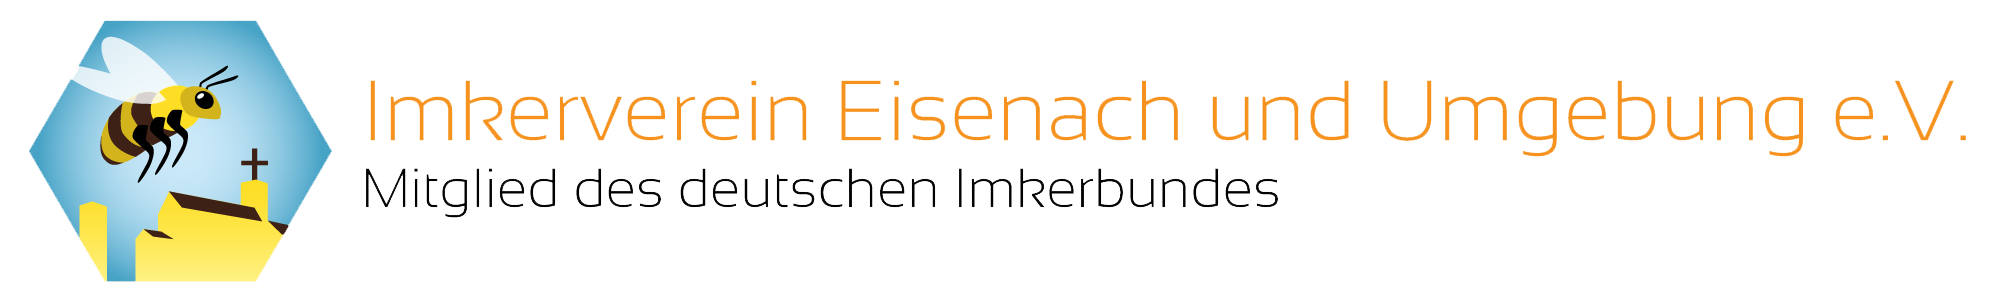 Imkerverein Eisenach und Umgebung